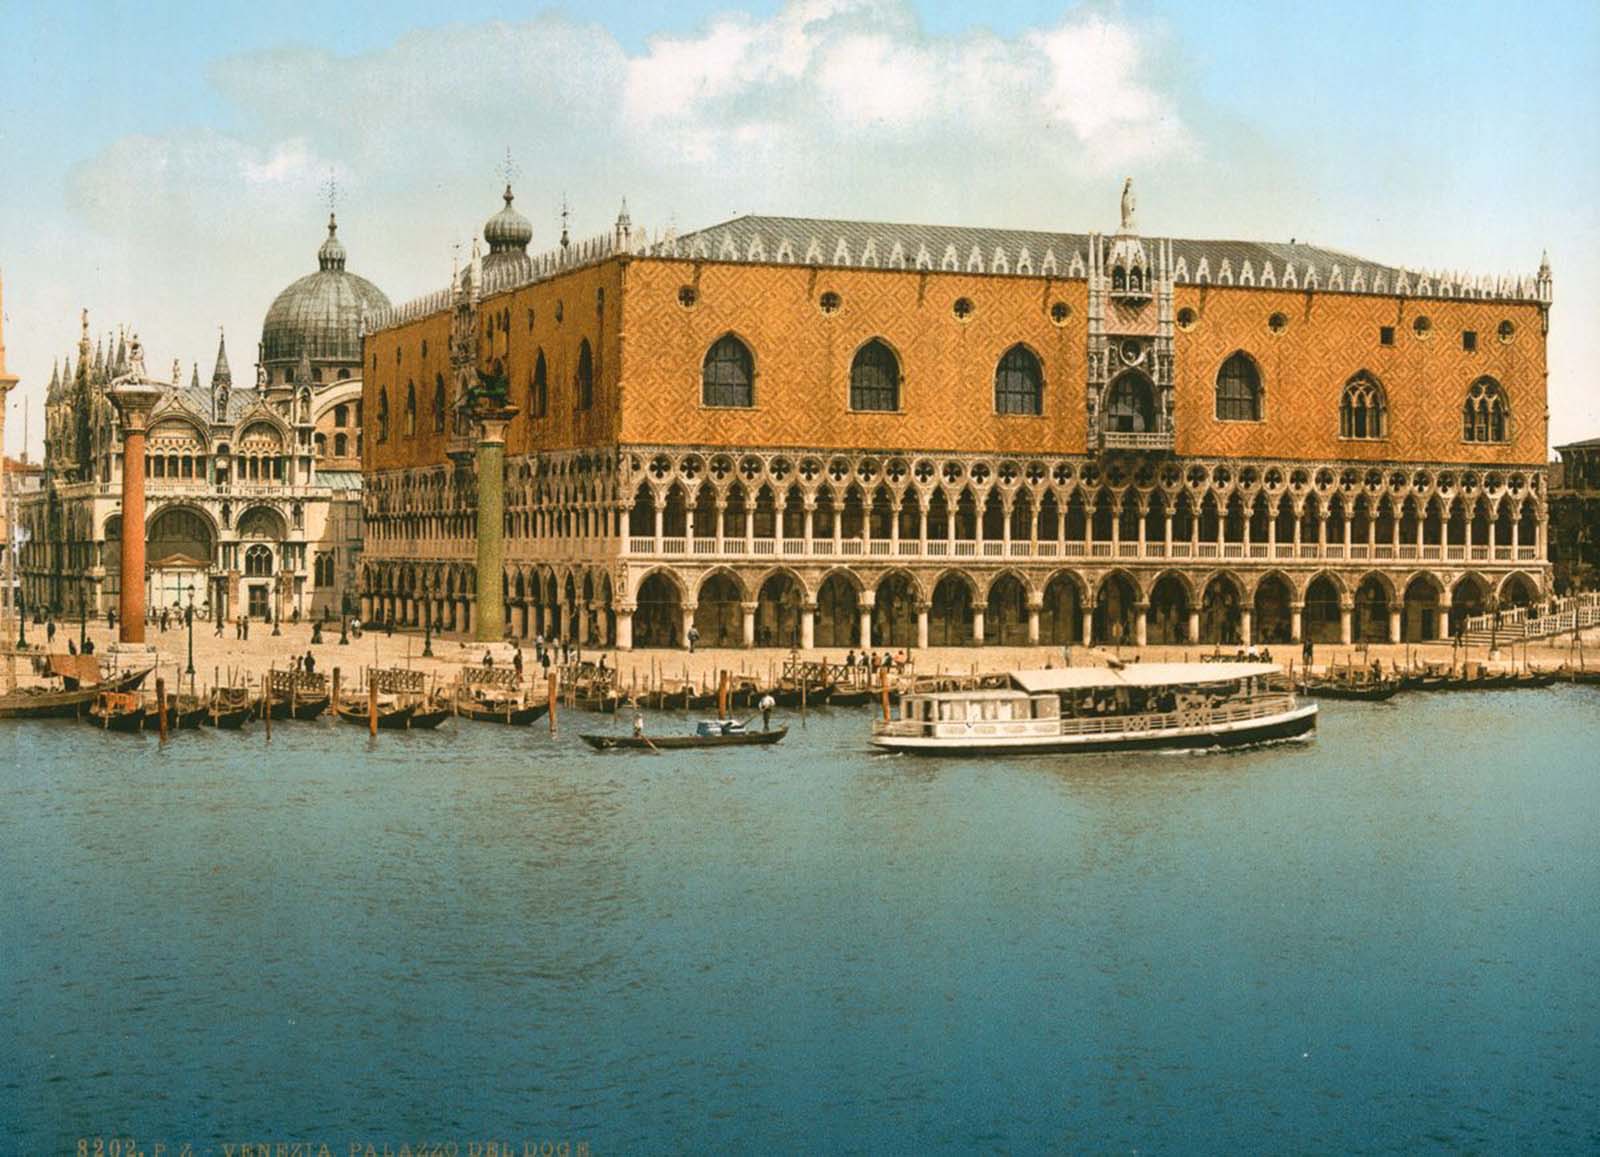 Venise dans de belles images anciennes en couleurs, 1890